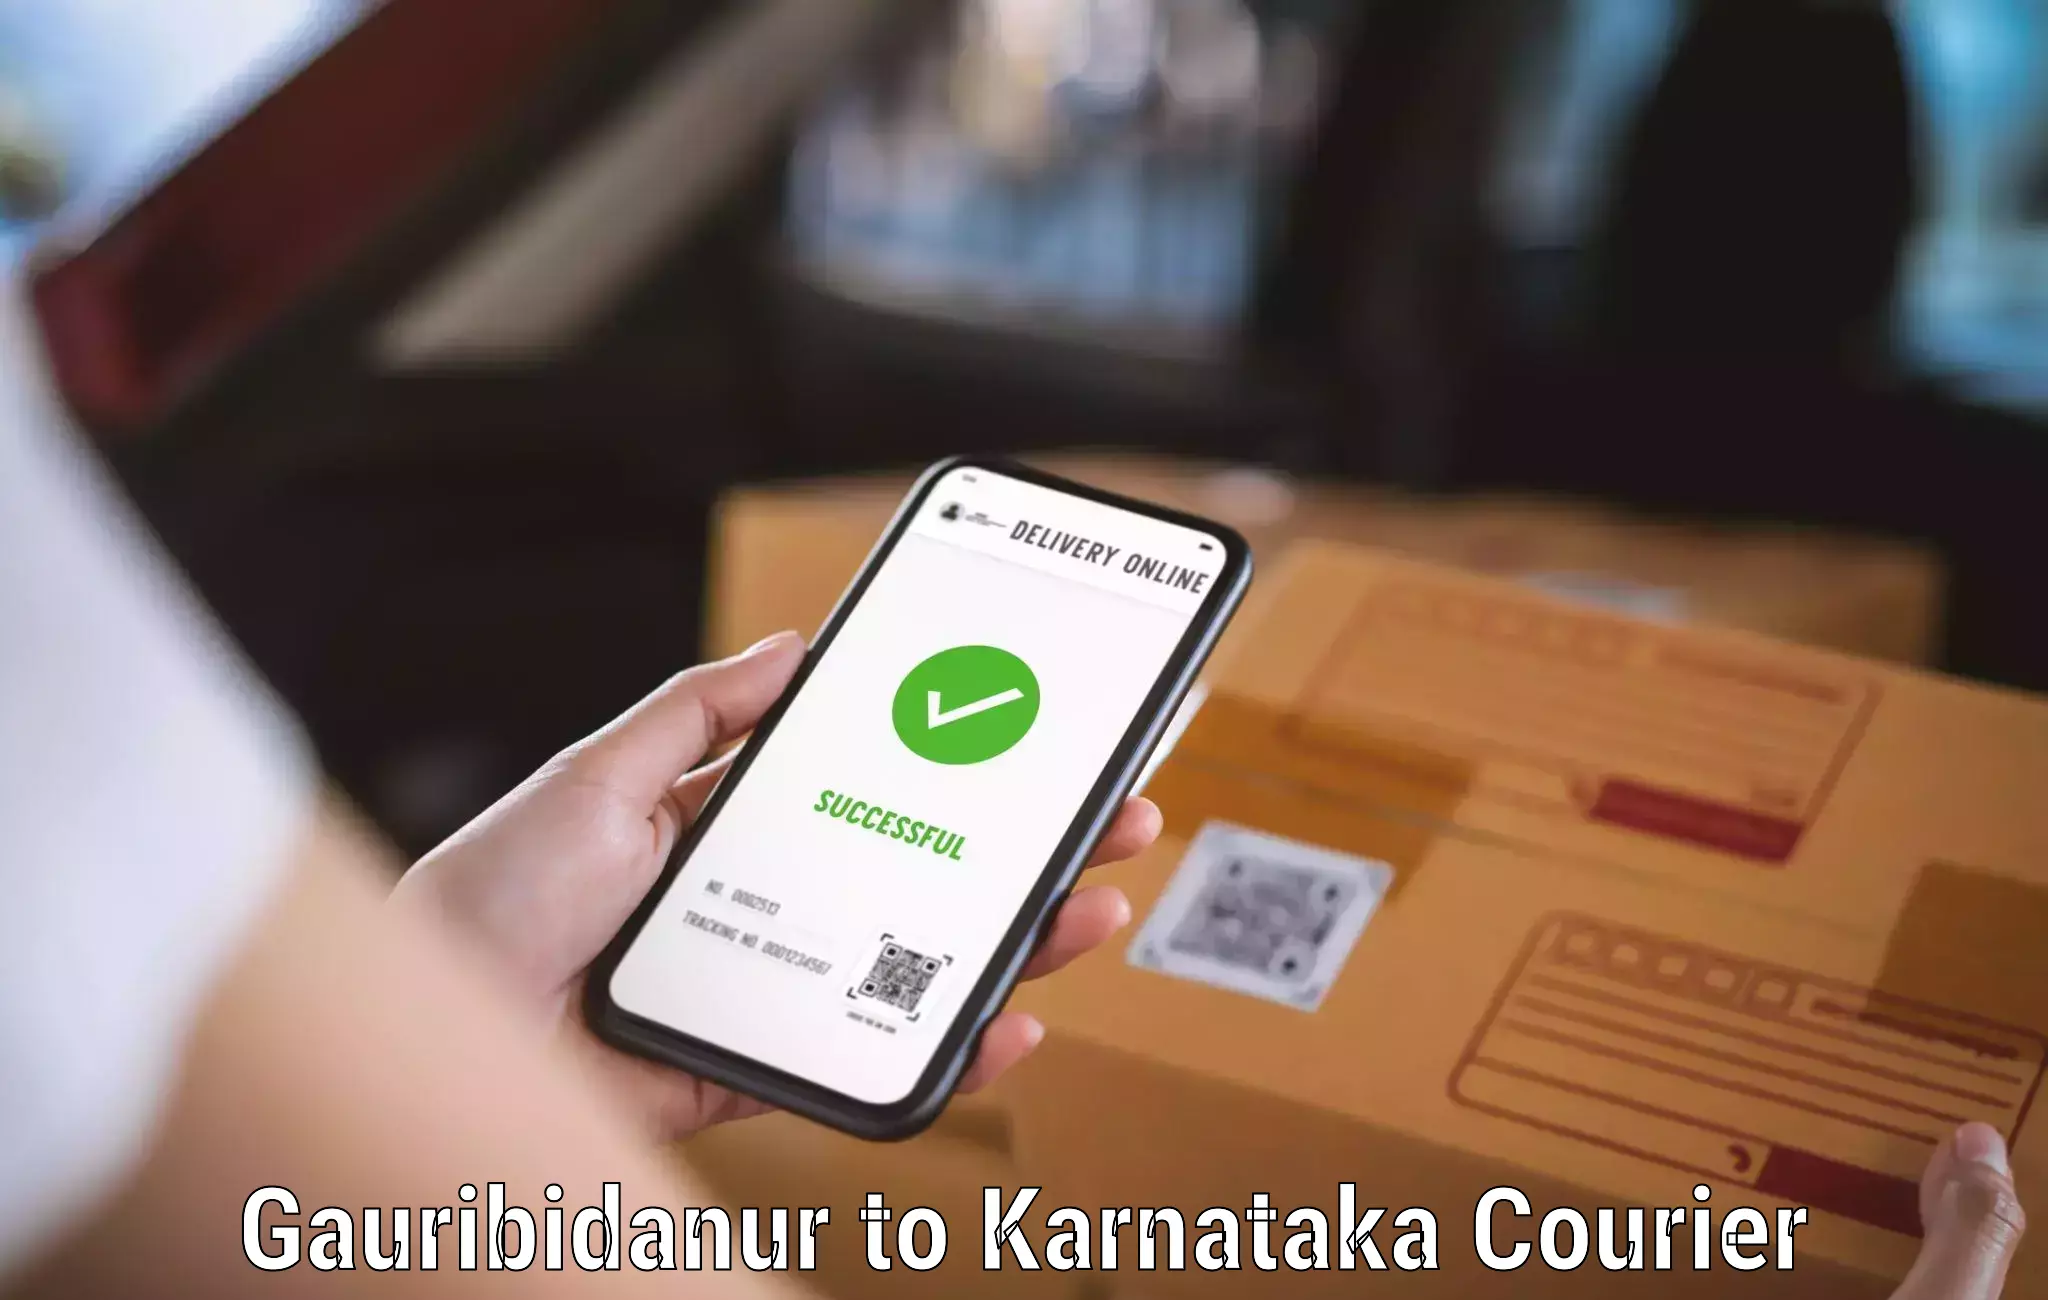 Courier insurance Gauribidanur to Srirangapatna